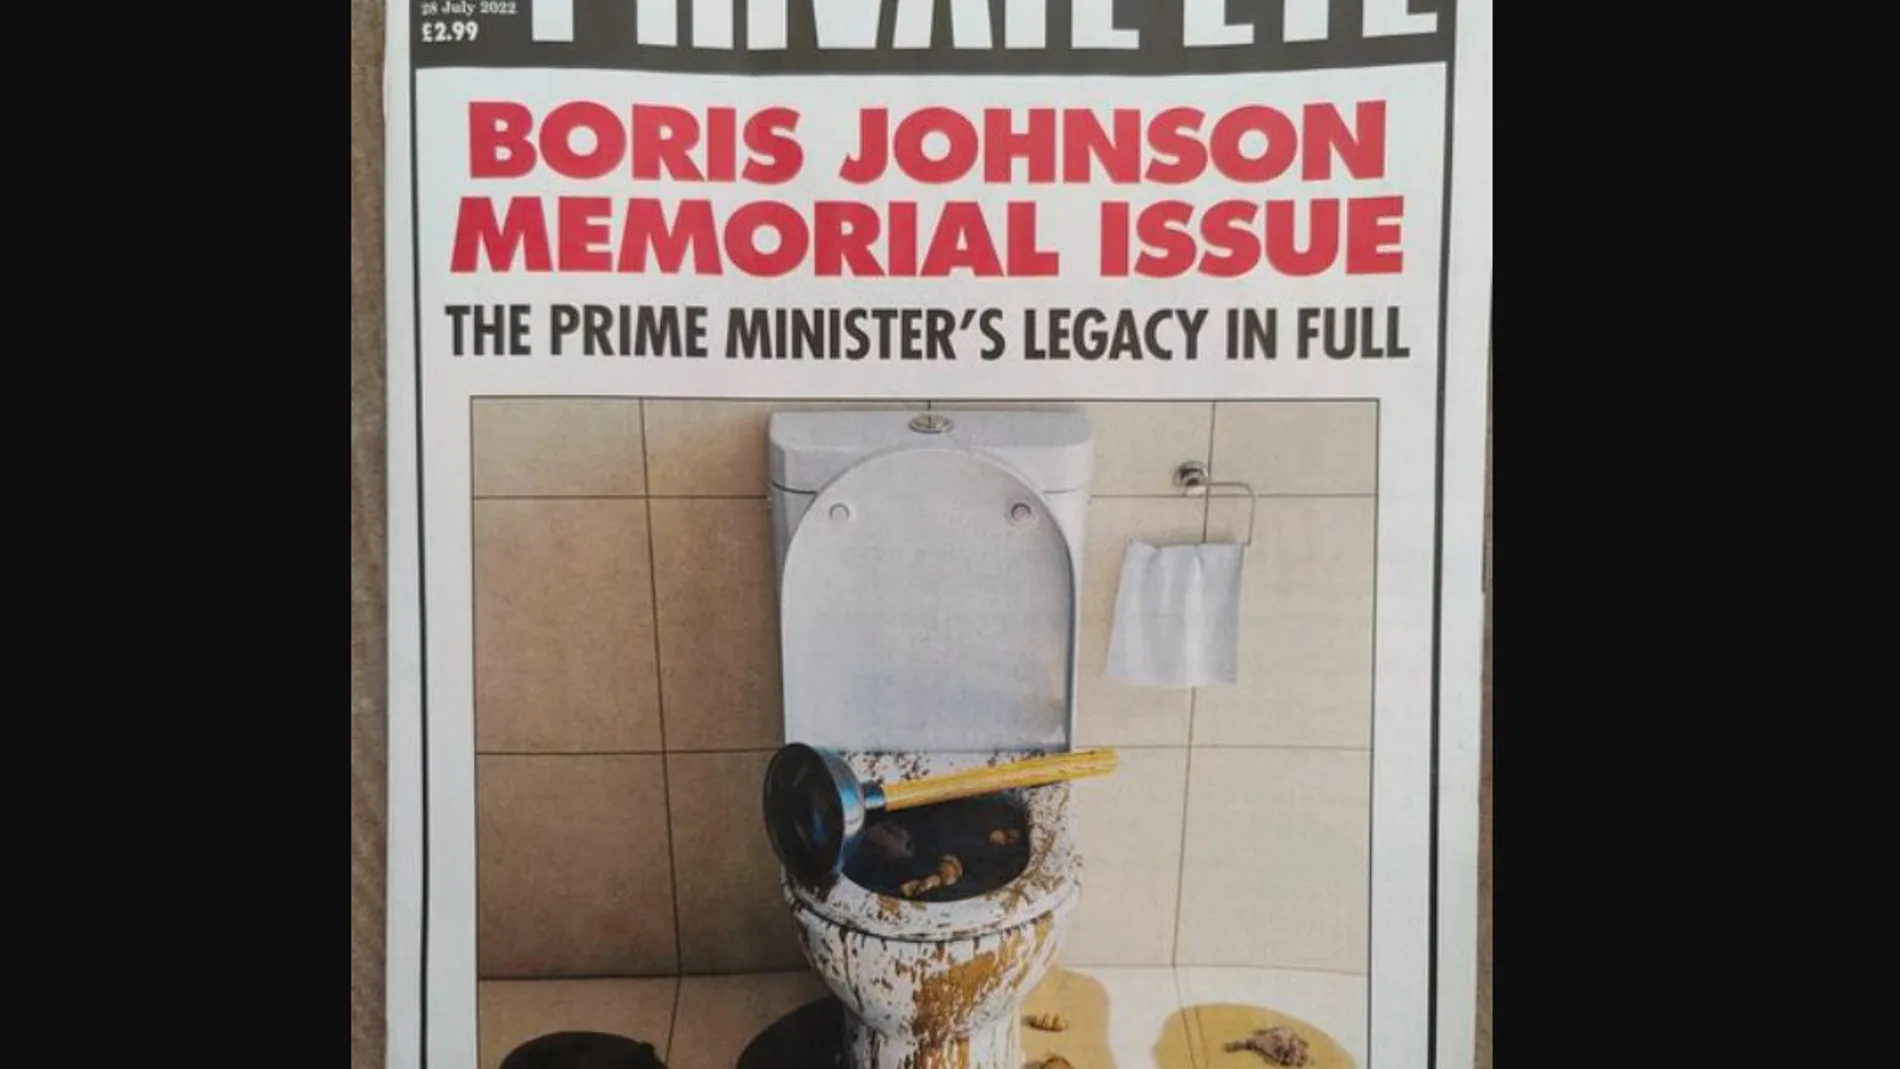 La última portada de ‘Private Eye’ sobre el legado de Johnson está dando mucho que hablar en las redes sociales